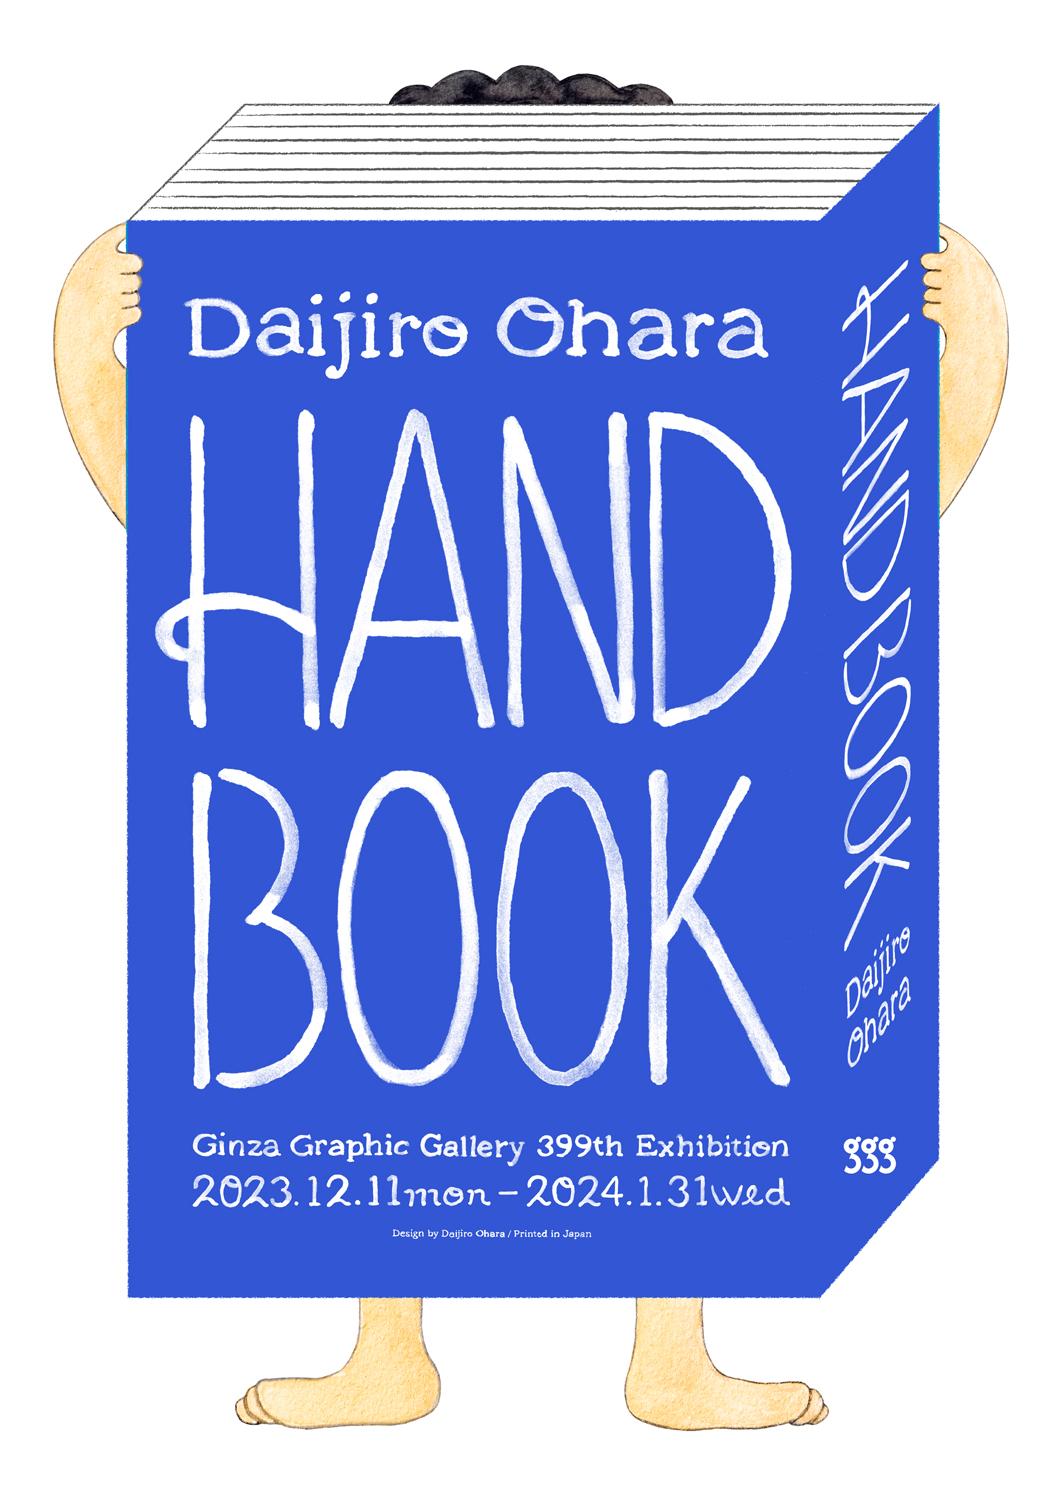 ギンザ・グラフィック・ギャラリー第399回企画展「Daijiro Ohara HAND BOOK」